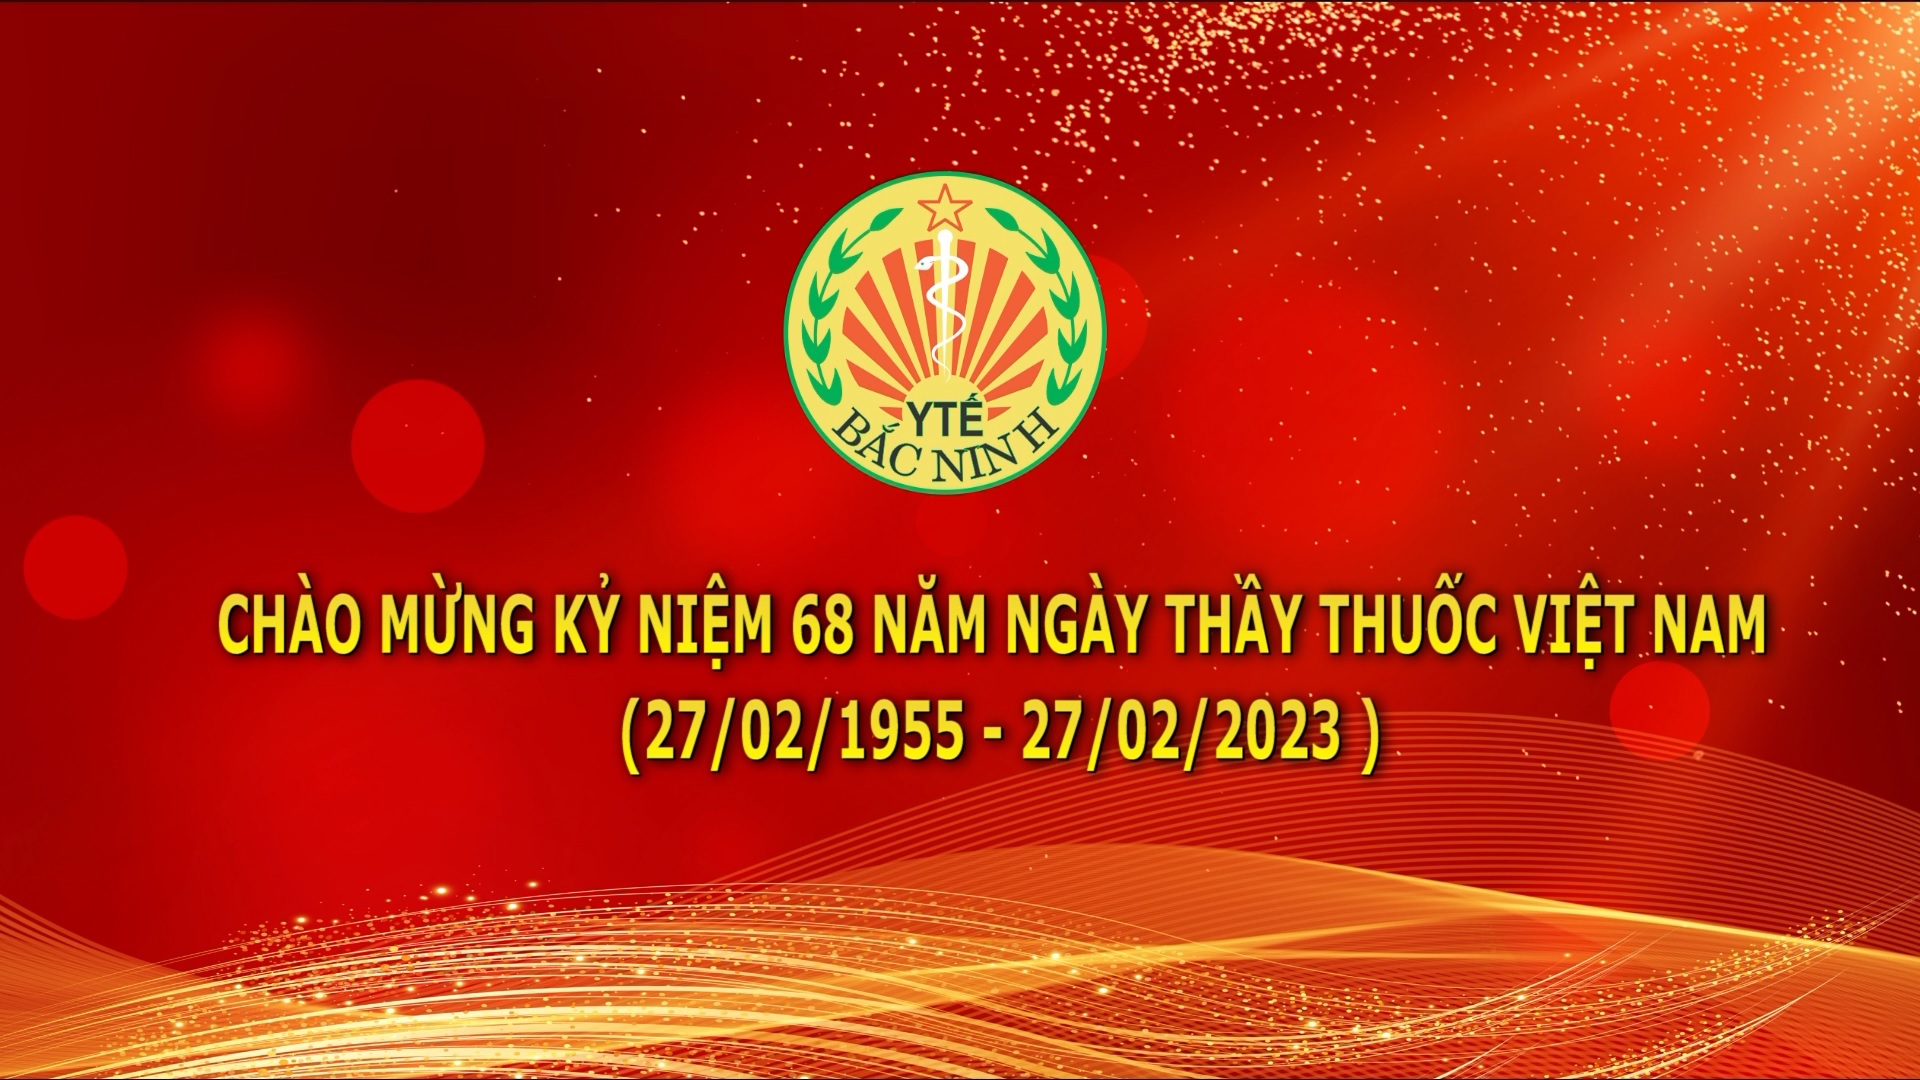 Chúc mừng ngày thầy thuốc Việt Nam 27-2-2023